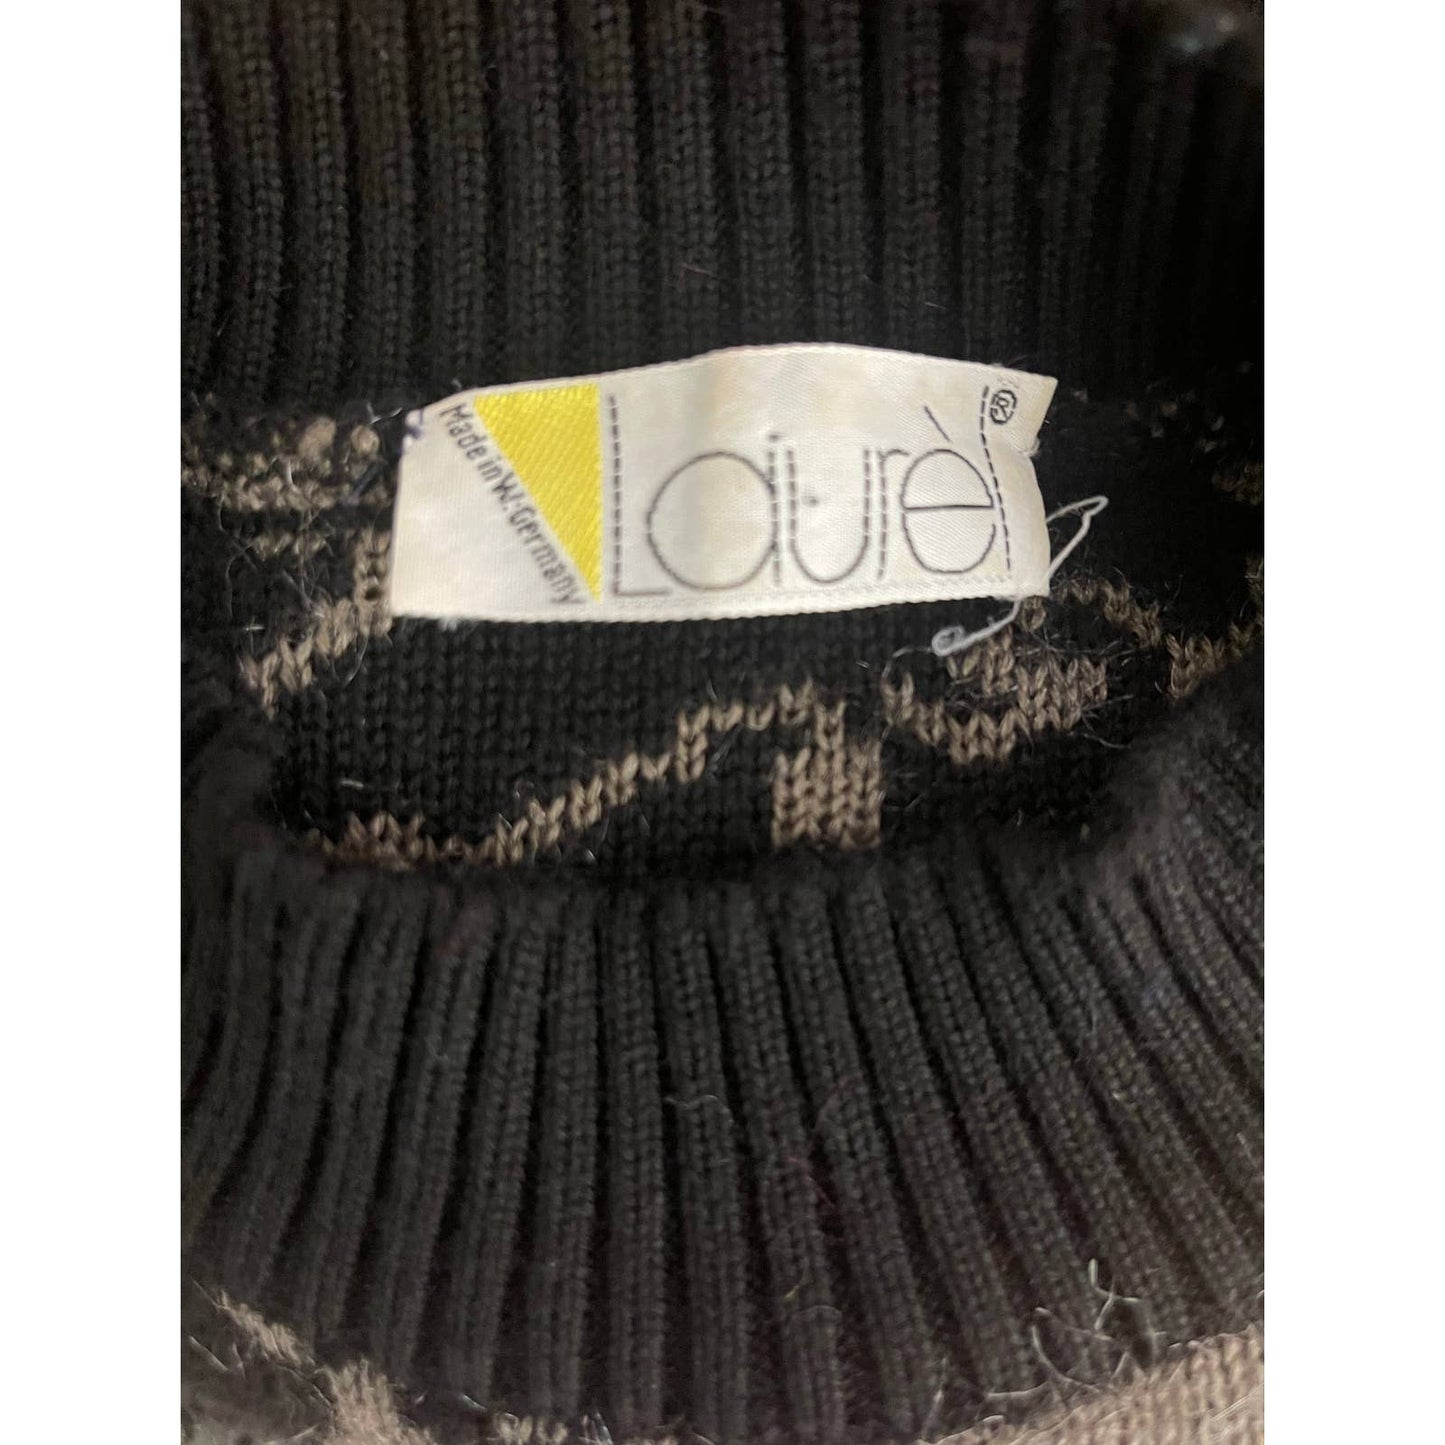 LaurelVintage 1980's Laurel Black/Brown Oversized Asymmetrical Patterned Sweater Sz 38 - Black Dog Vintage